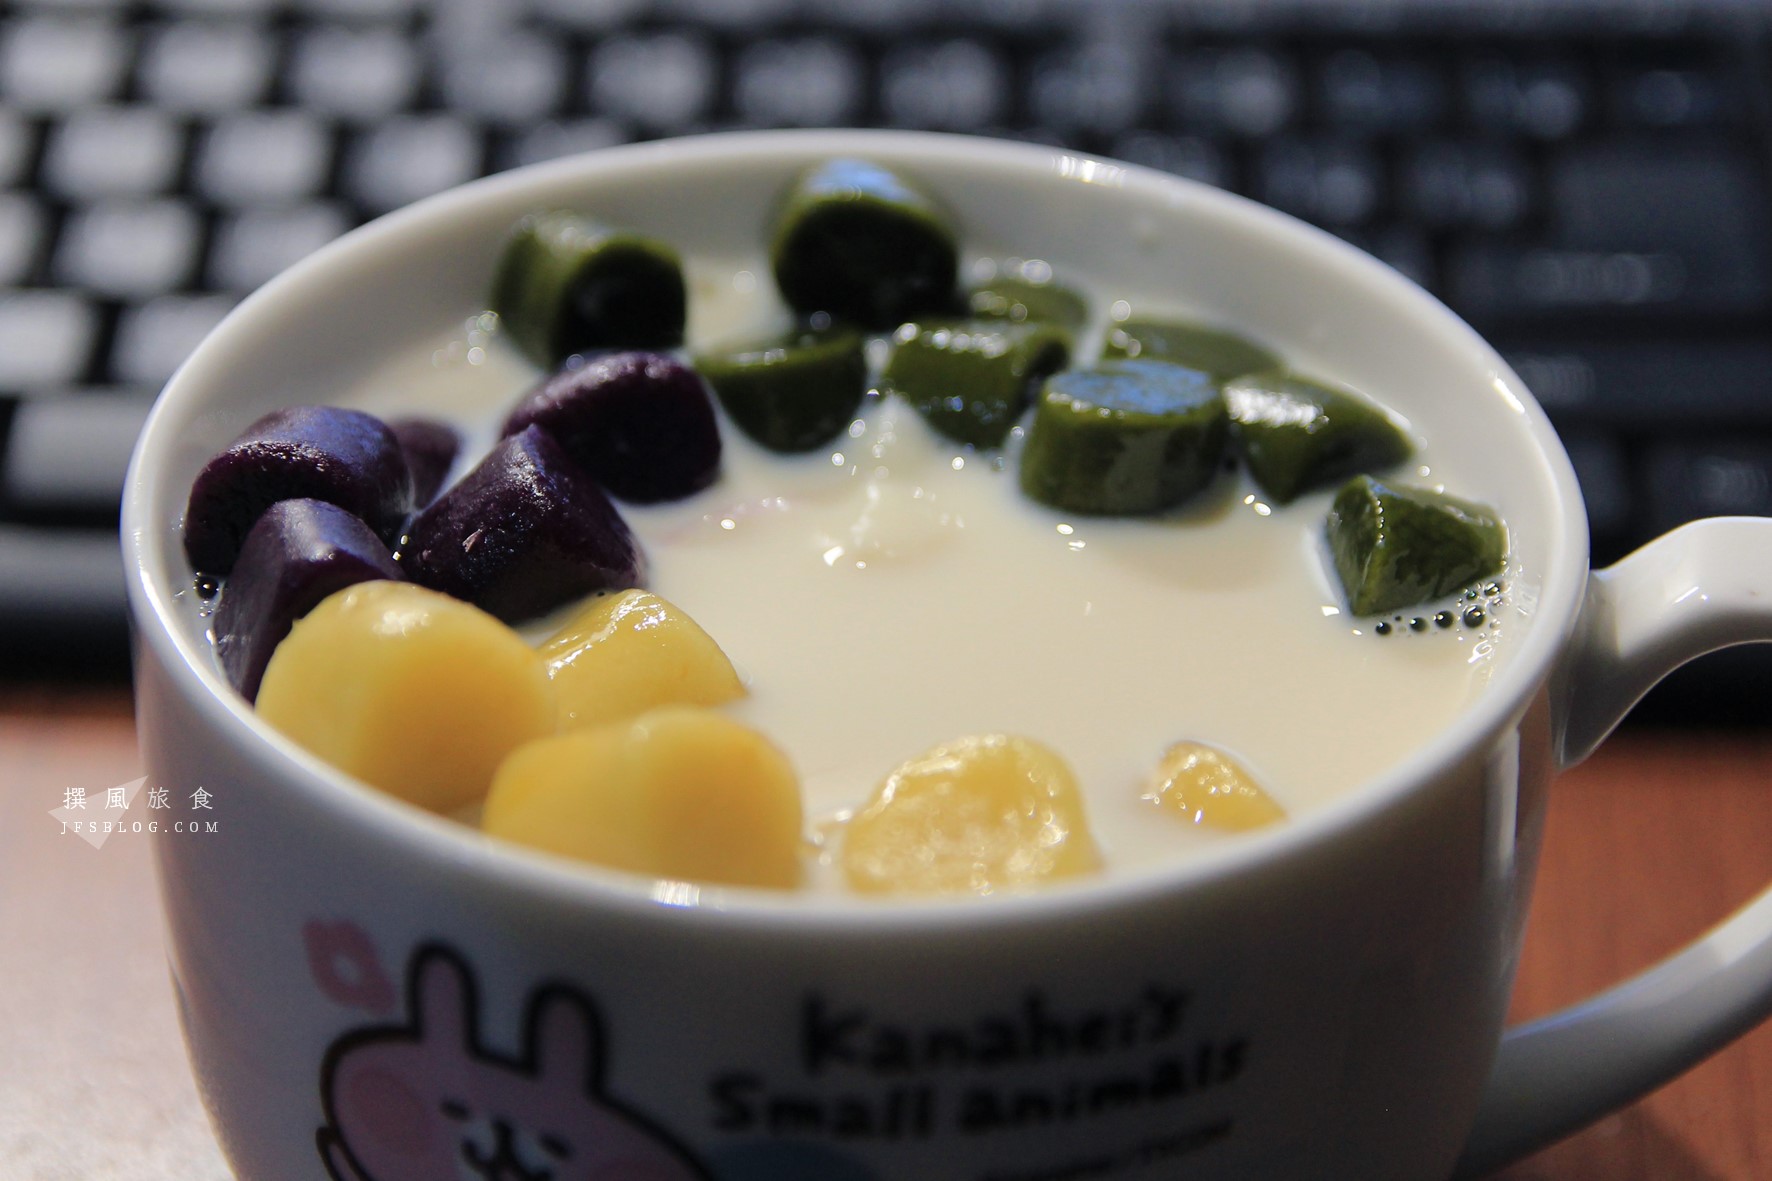 食譜「芋圓」與「地瓜圓」，台灣傳統甜點手工製作超簡單